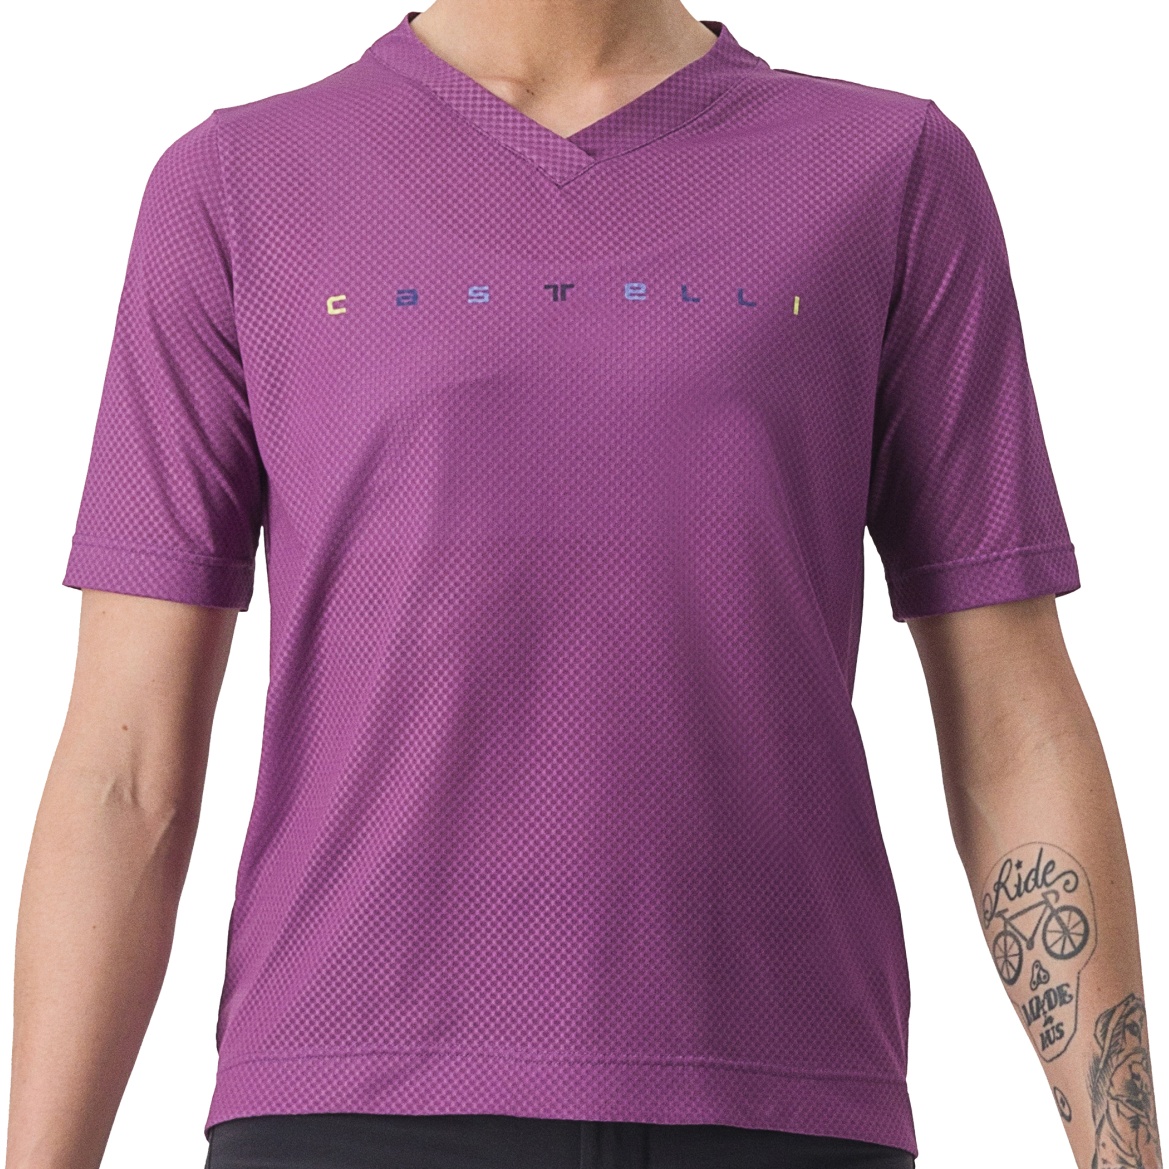 Produktbild von Castelli Trail Tech 2 T-Shirt Damen - amethyst 548